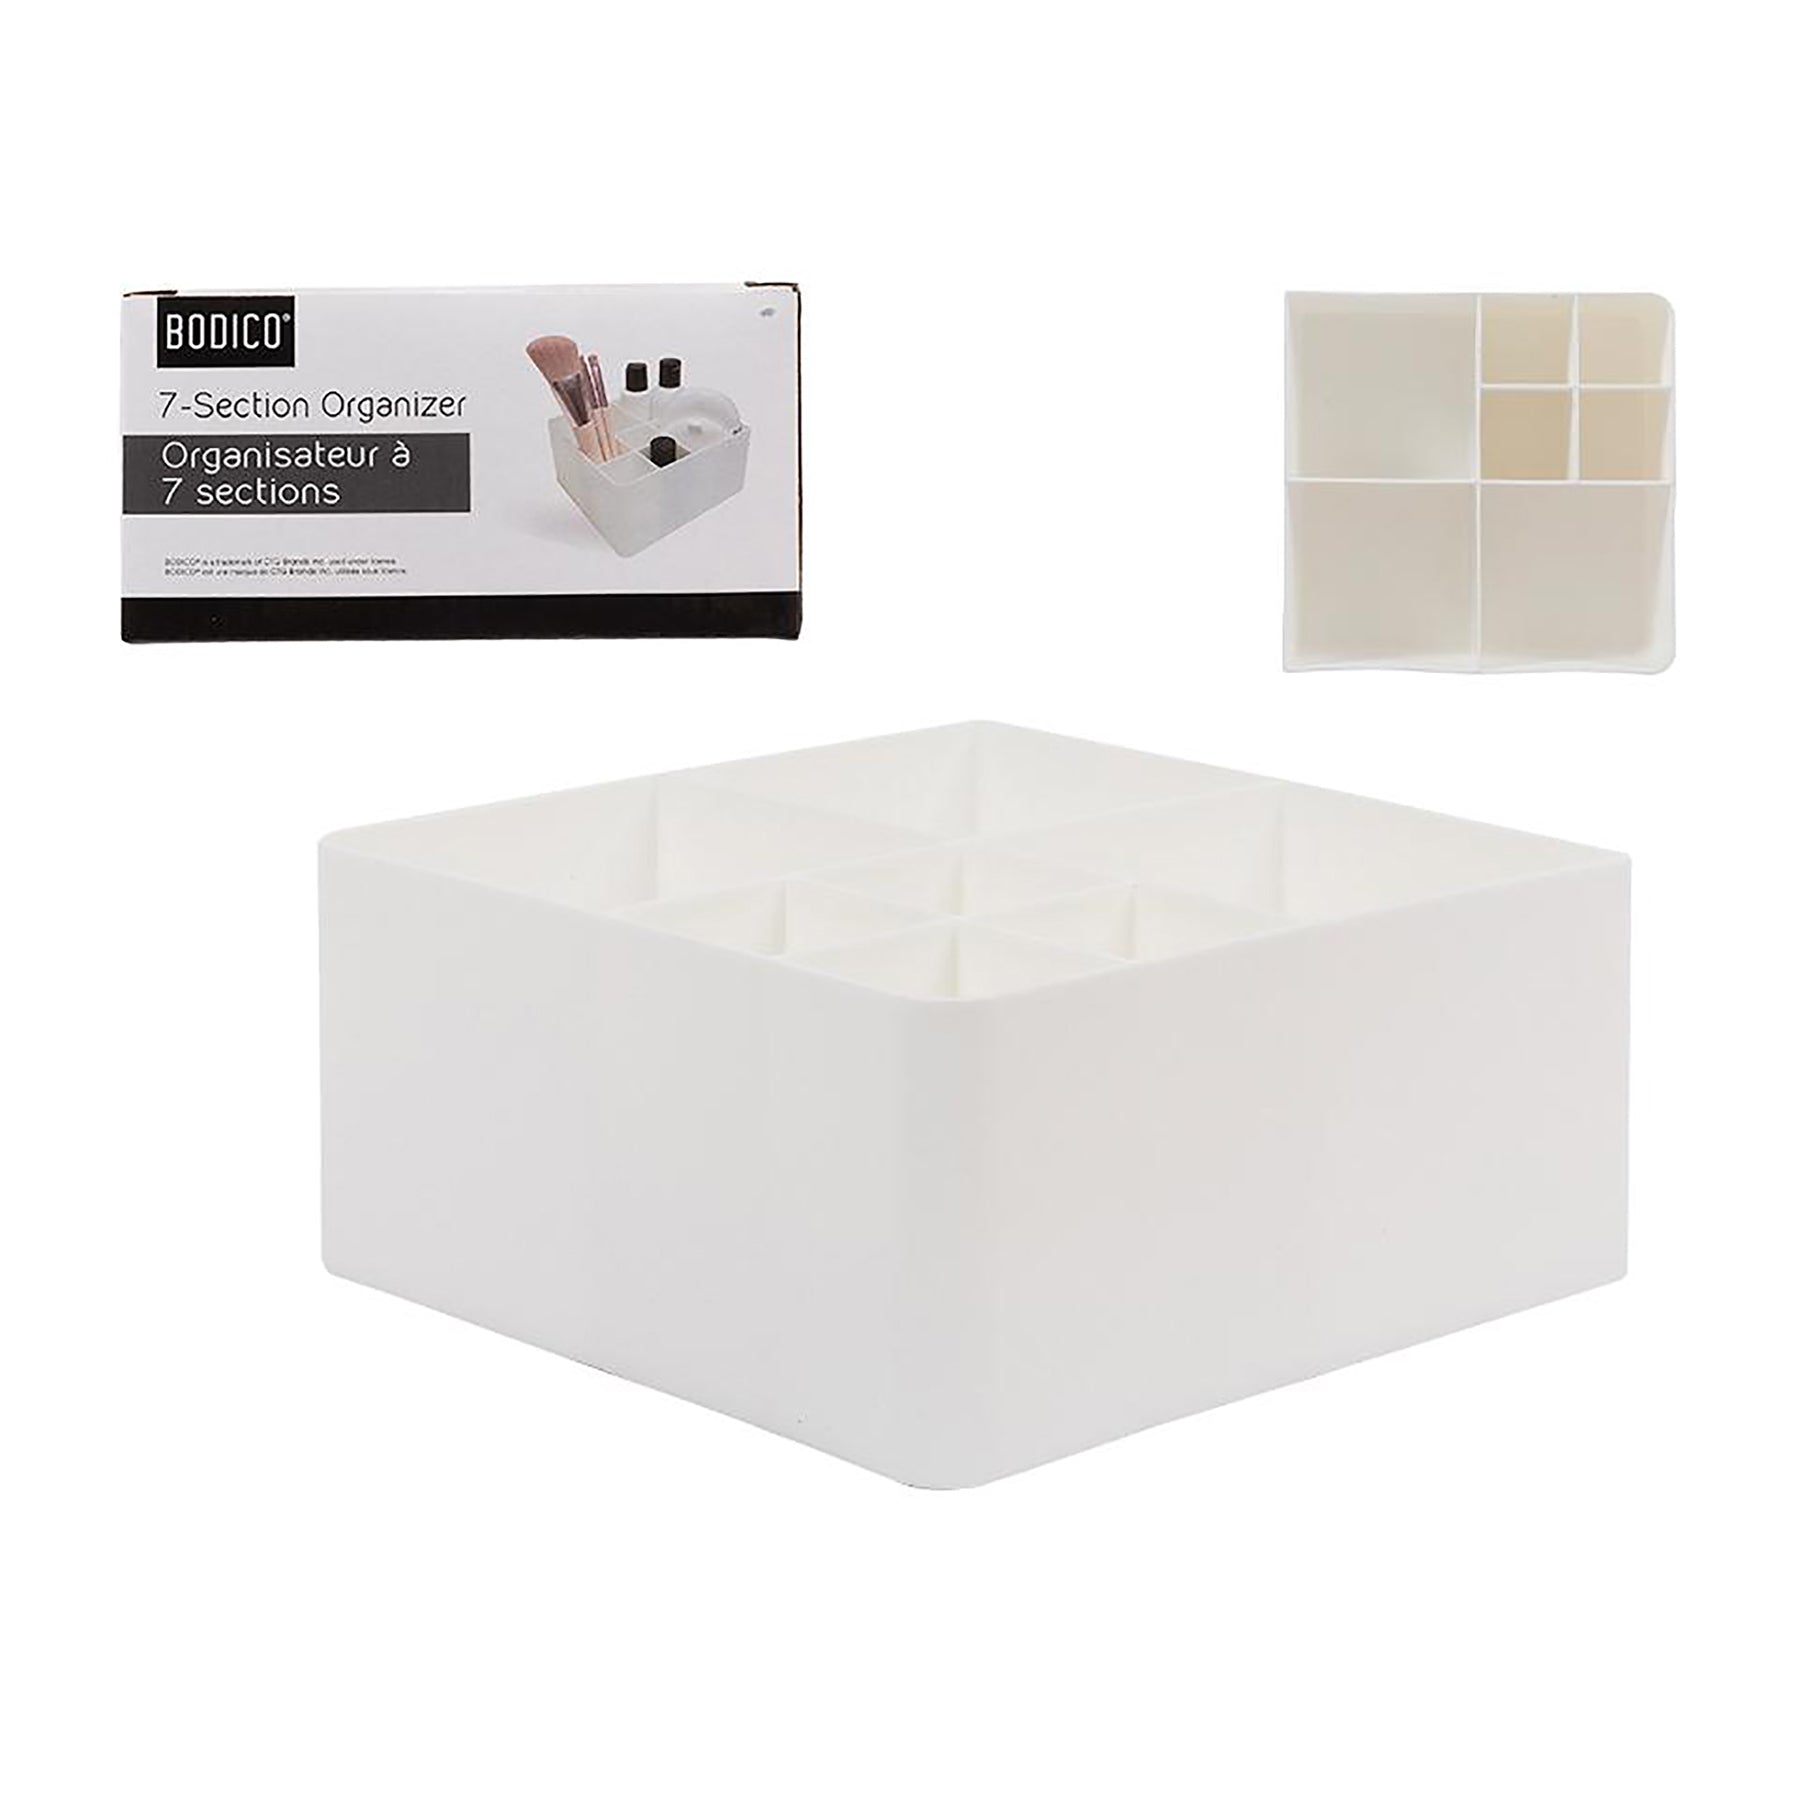 Bodico Organizer 7 Compartments White Plastic 5.3x5.5x2.75in